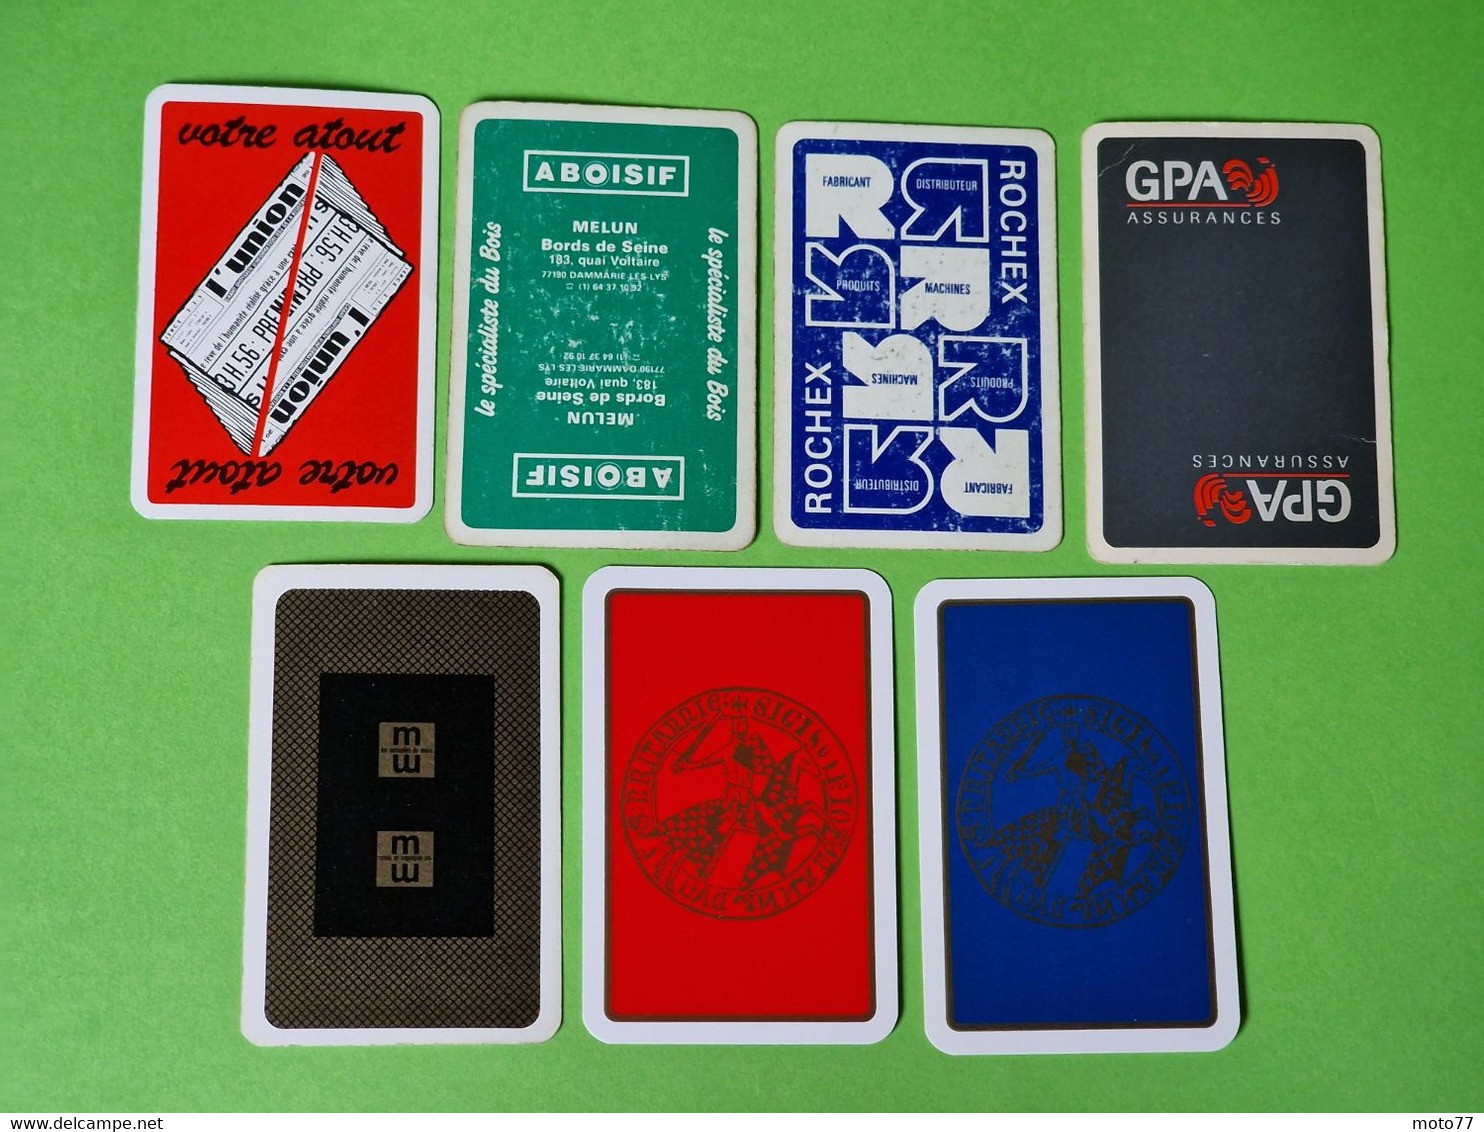 Lot 7 Cartes à Jouer - DAME De TRÈFLE - Dos Bleu,Rouge - Pub L'UNION Reims, ABOISIF, GPA, M&M, ROCHEX - Vers 1990/2000 - 32 Karten